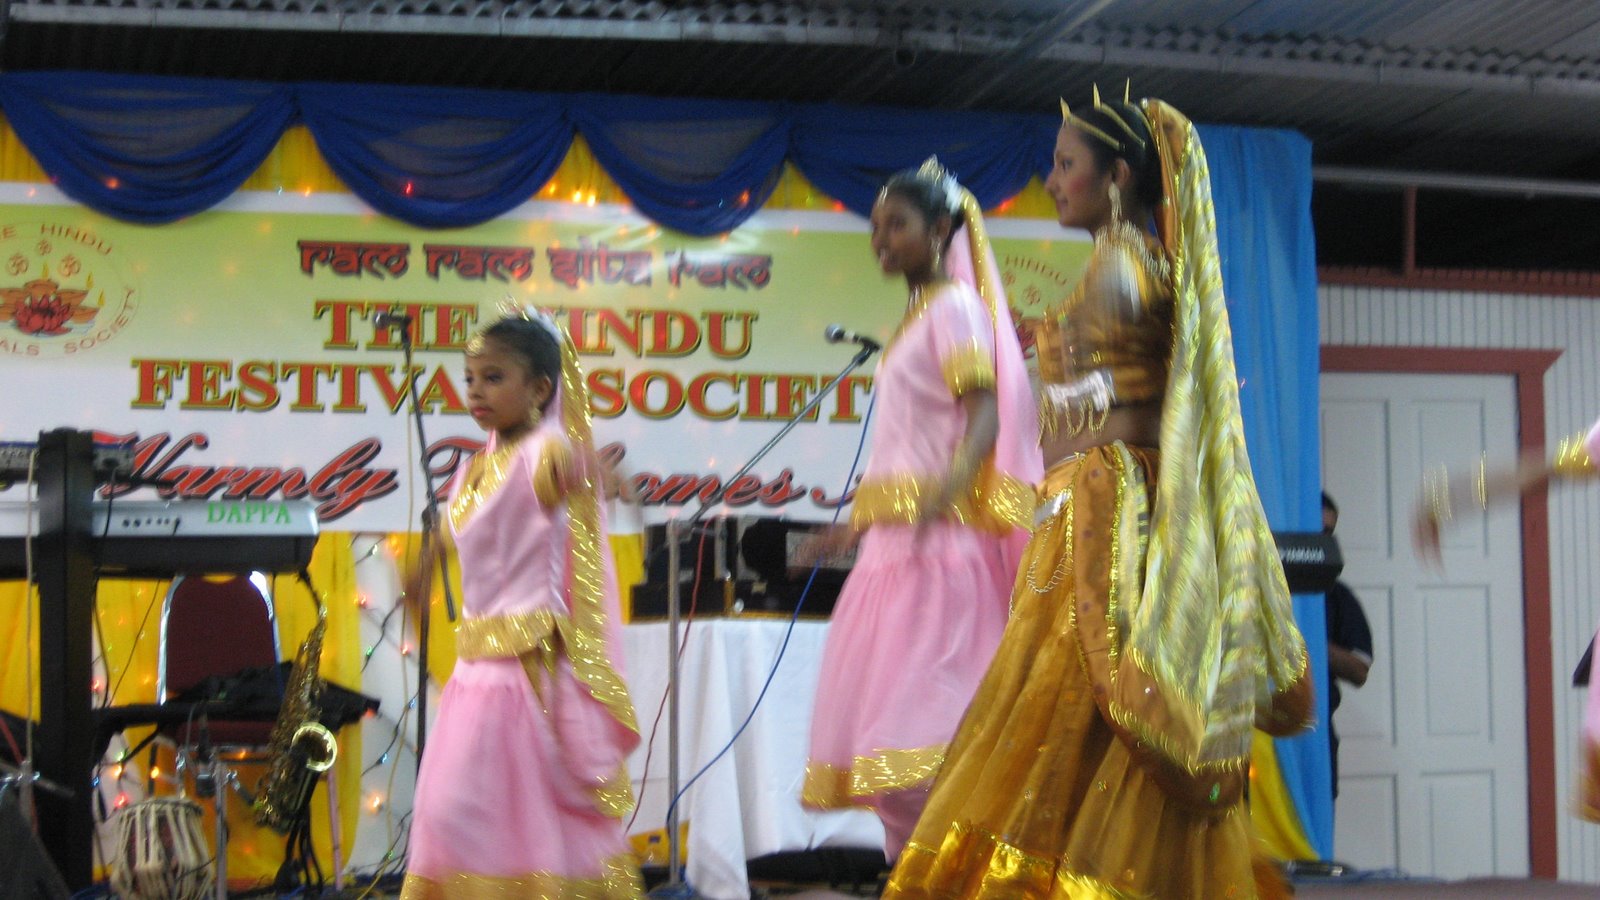 [Hindu+Festivals+Society+April+2008+044.jpg]